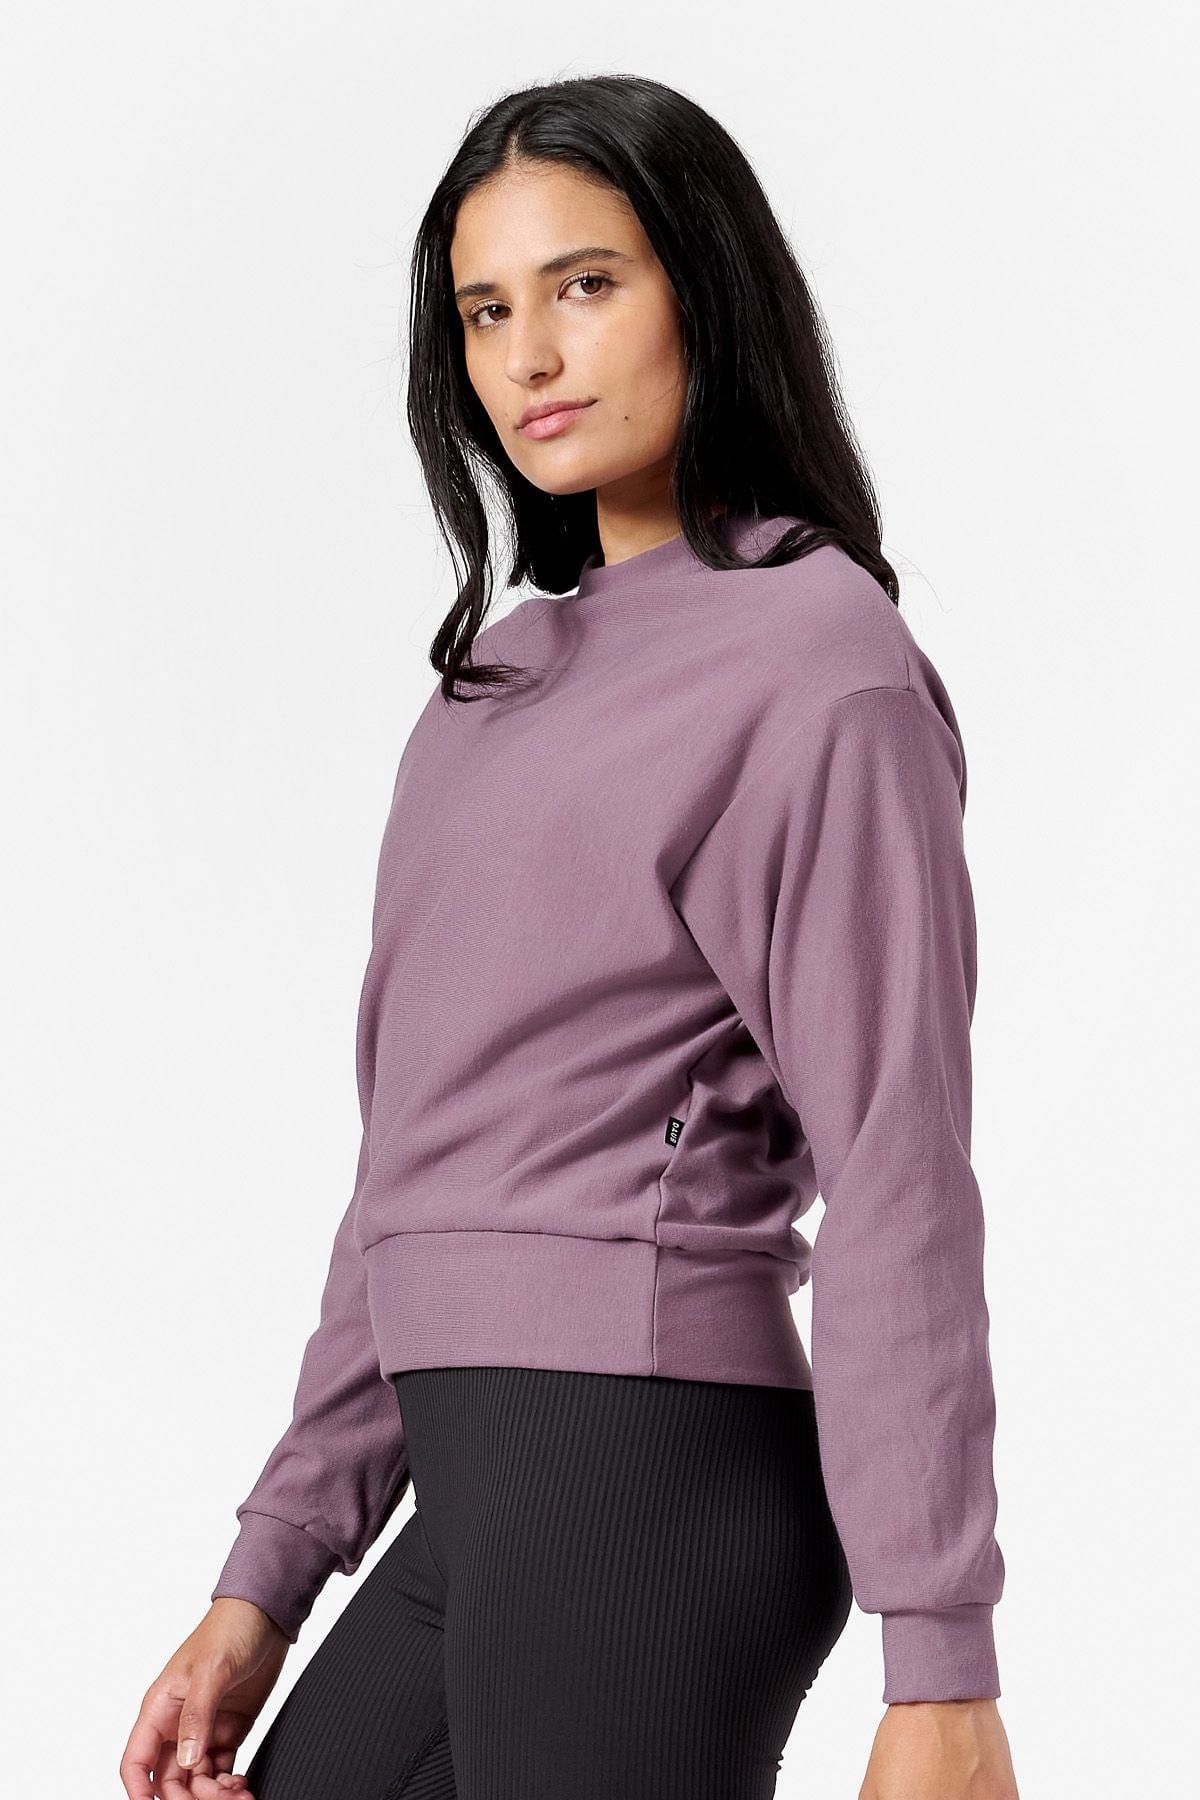 Side of a woman wearing a purple Sweatshirt